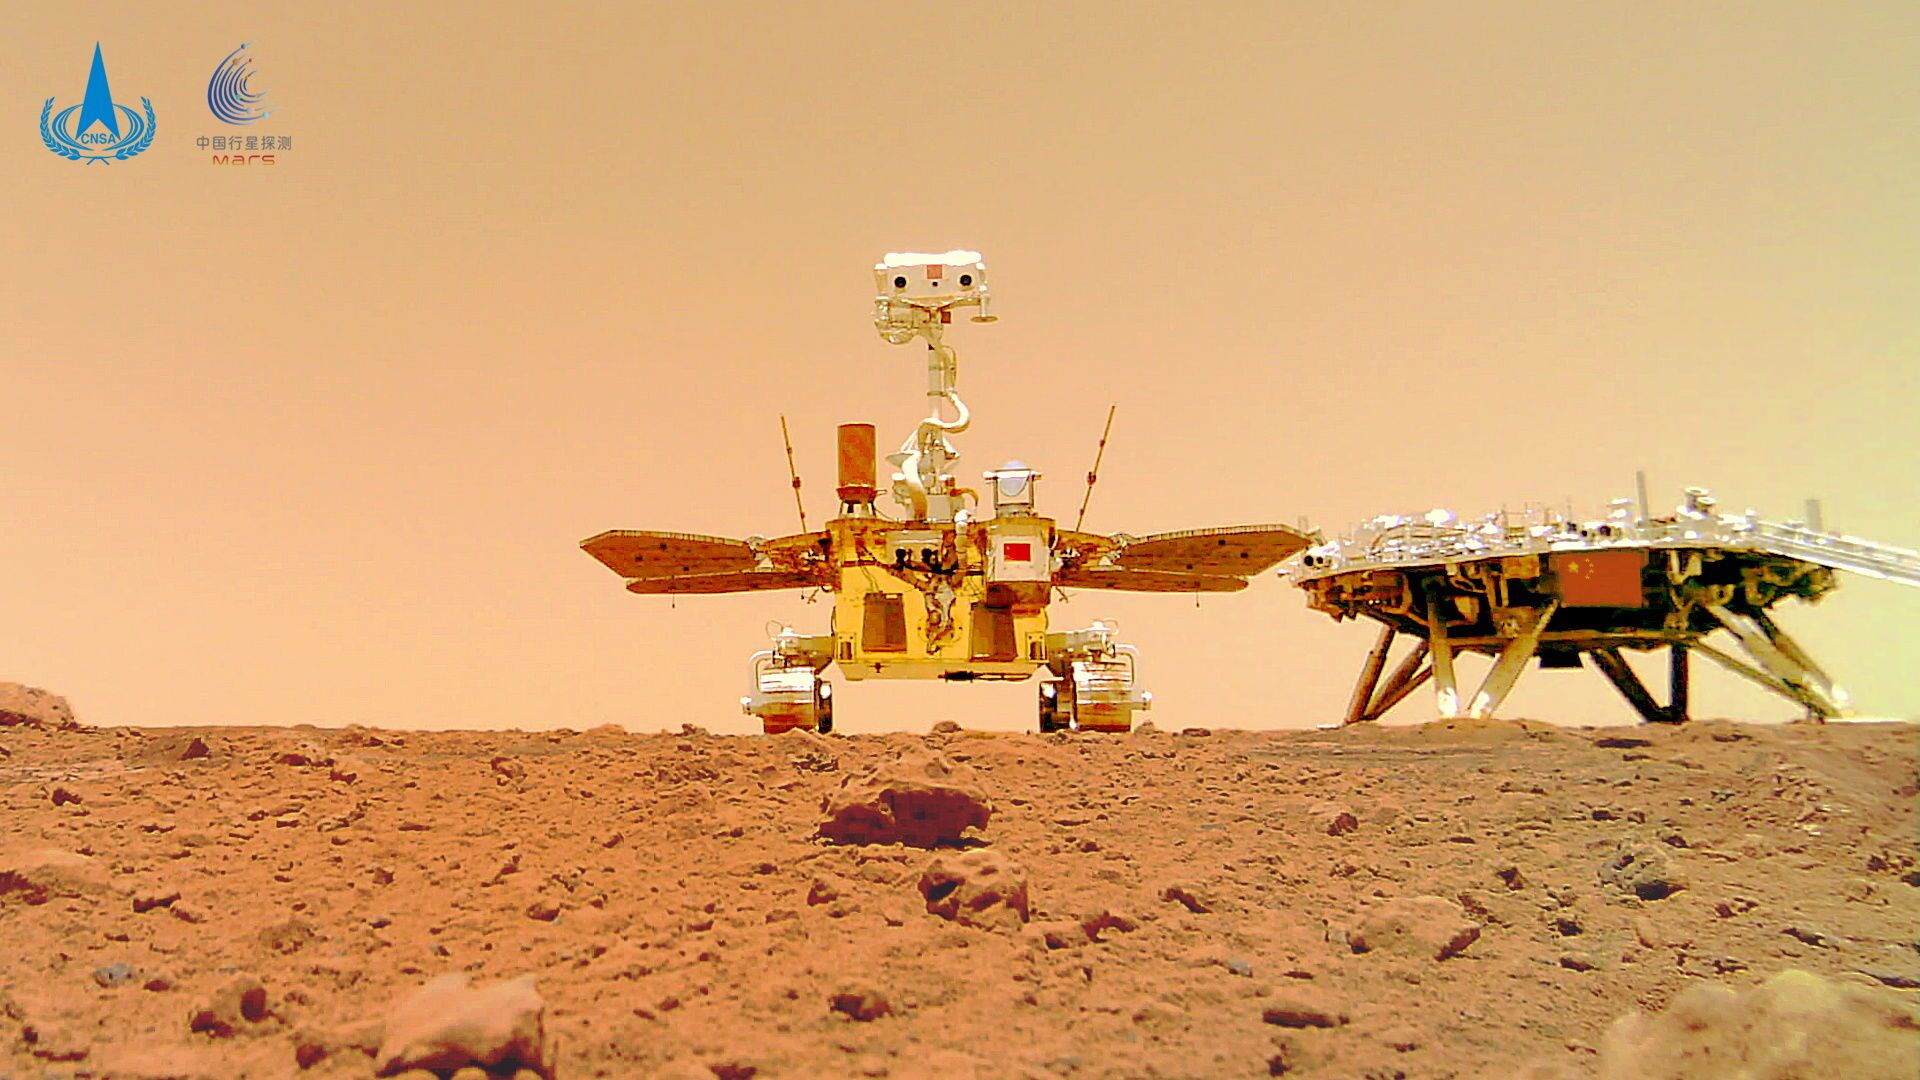 مسبار الصين الجوال يرسل صورة سيلفي طريفة من المريخ - سبوتنيك عربي, 1920, 11.06.2021